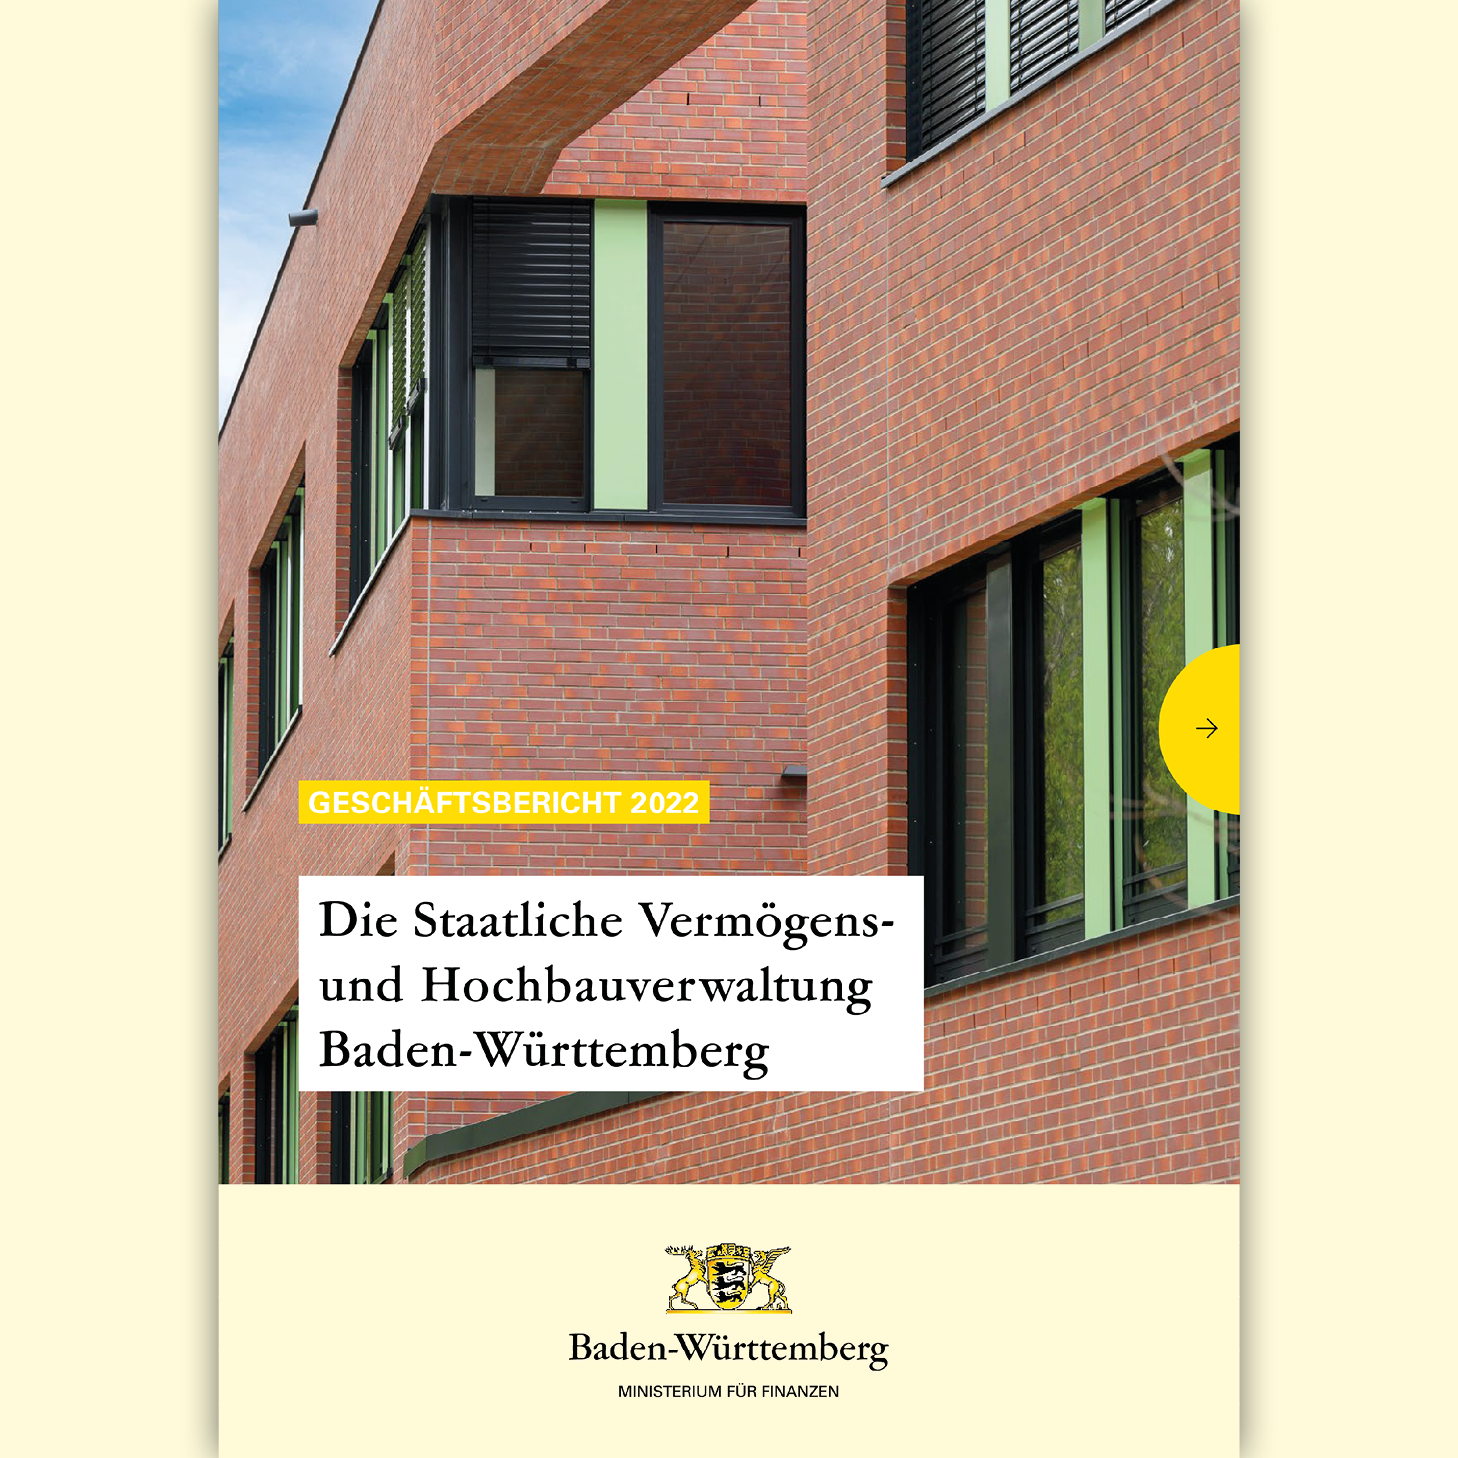 Titelbild Geschäftsbericht 2022: Elementary School für die US-Gaststreitkräfte in Stuttgart-Vaihinge